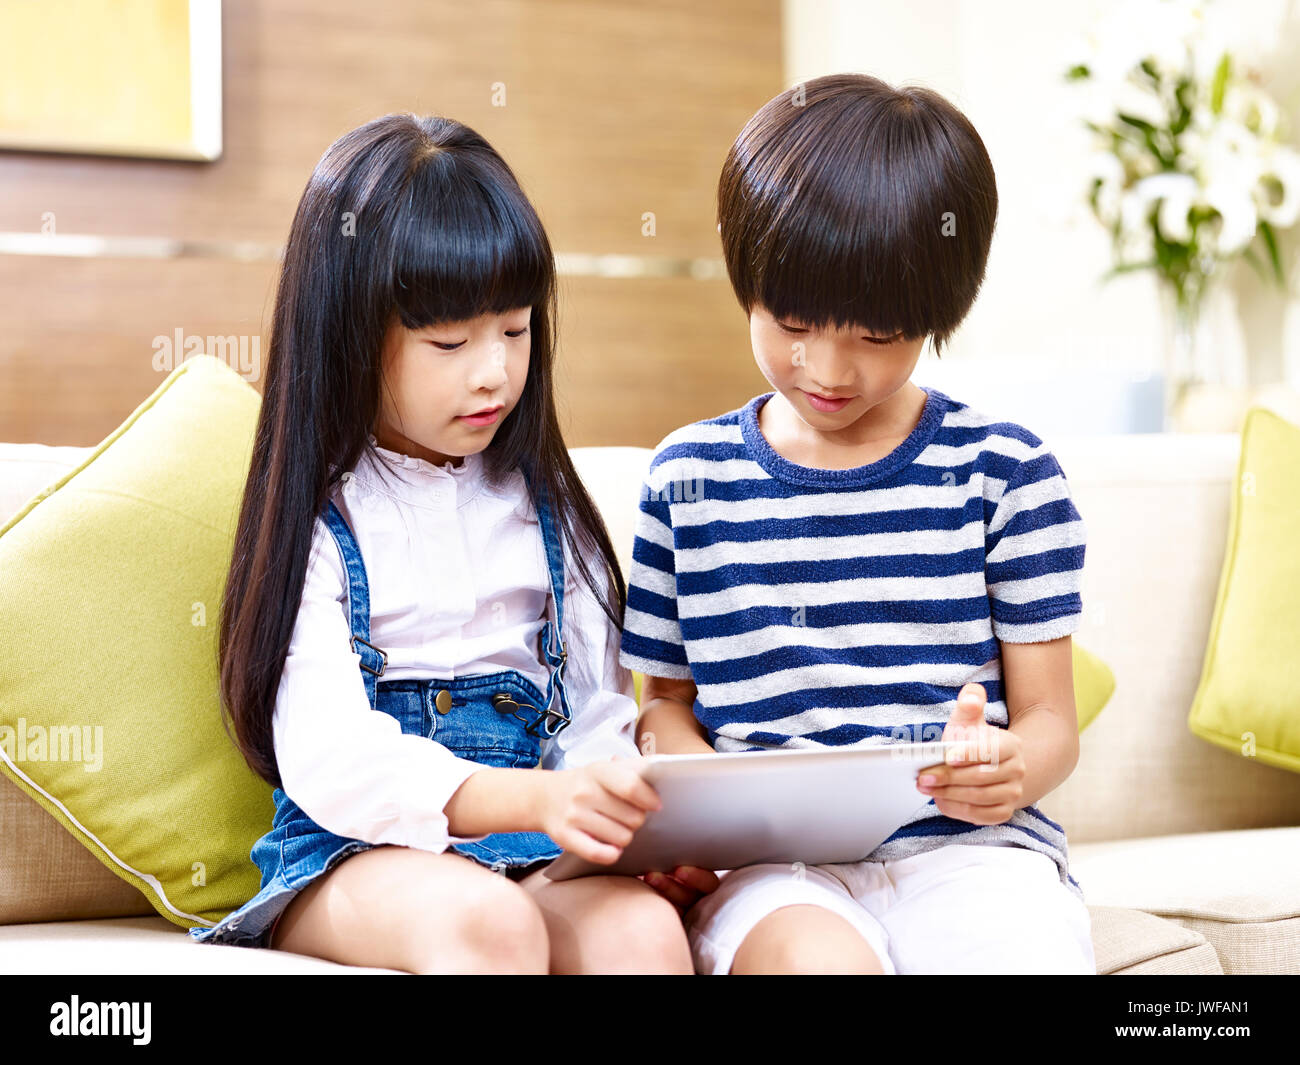 Deux frère et sœur asiatique assis sur table à l'aide d'accueil looking at digital tablet. Banque D'Images